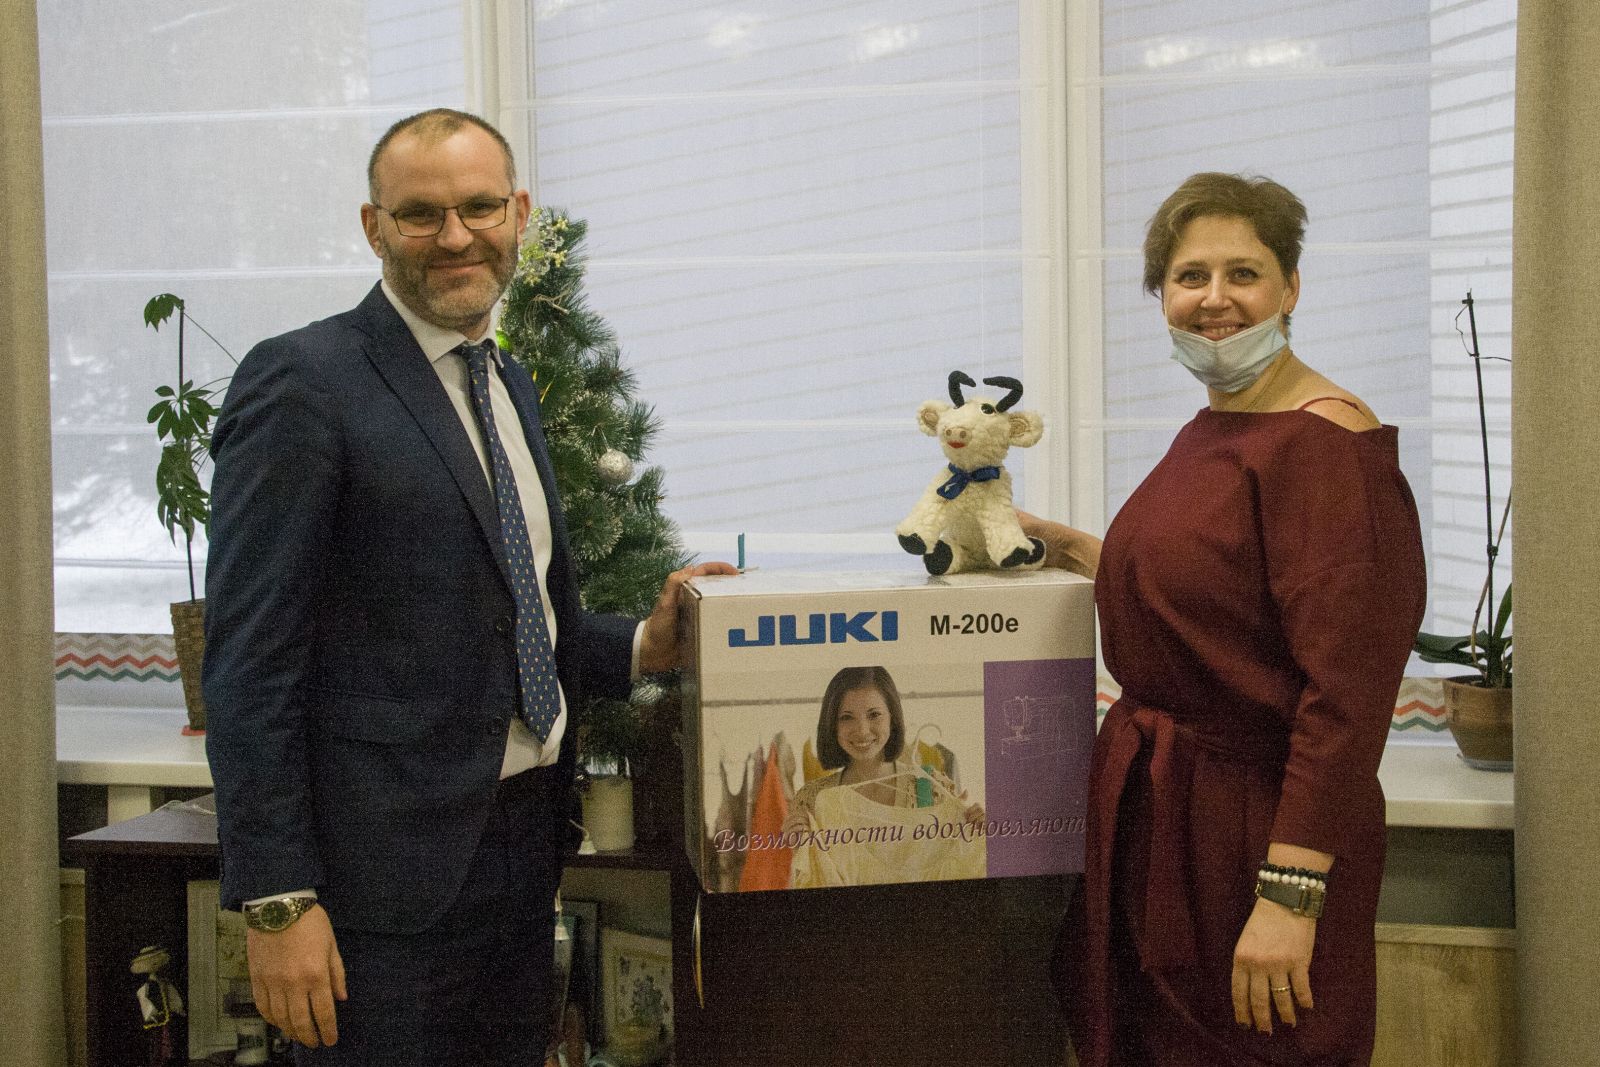 БелТПП приняла участие в новогодней благотворительной акции "Наши дети" 24.12.2020